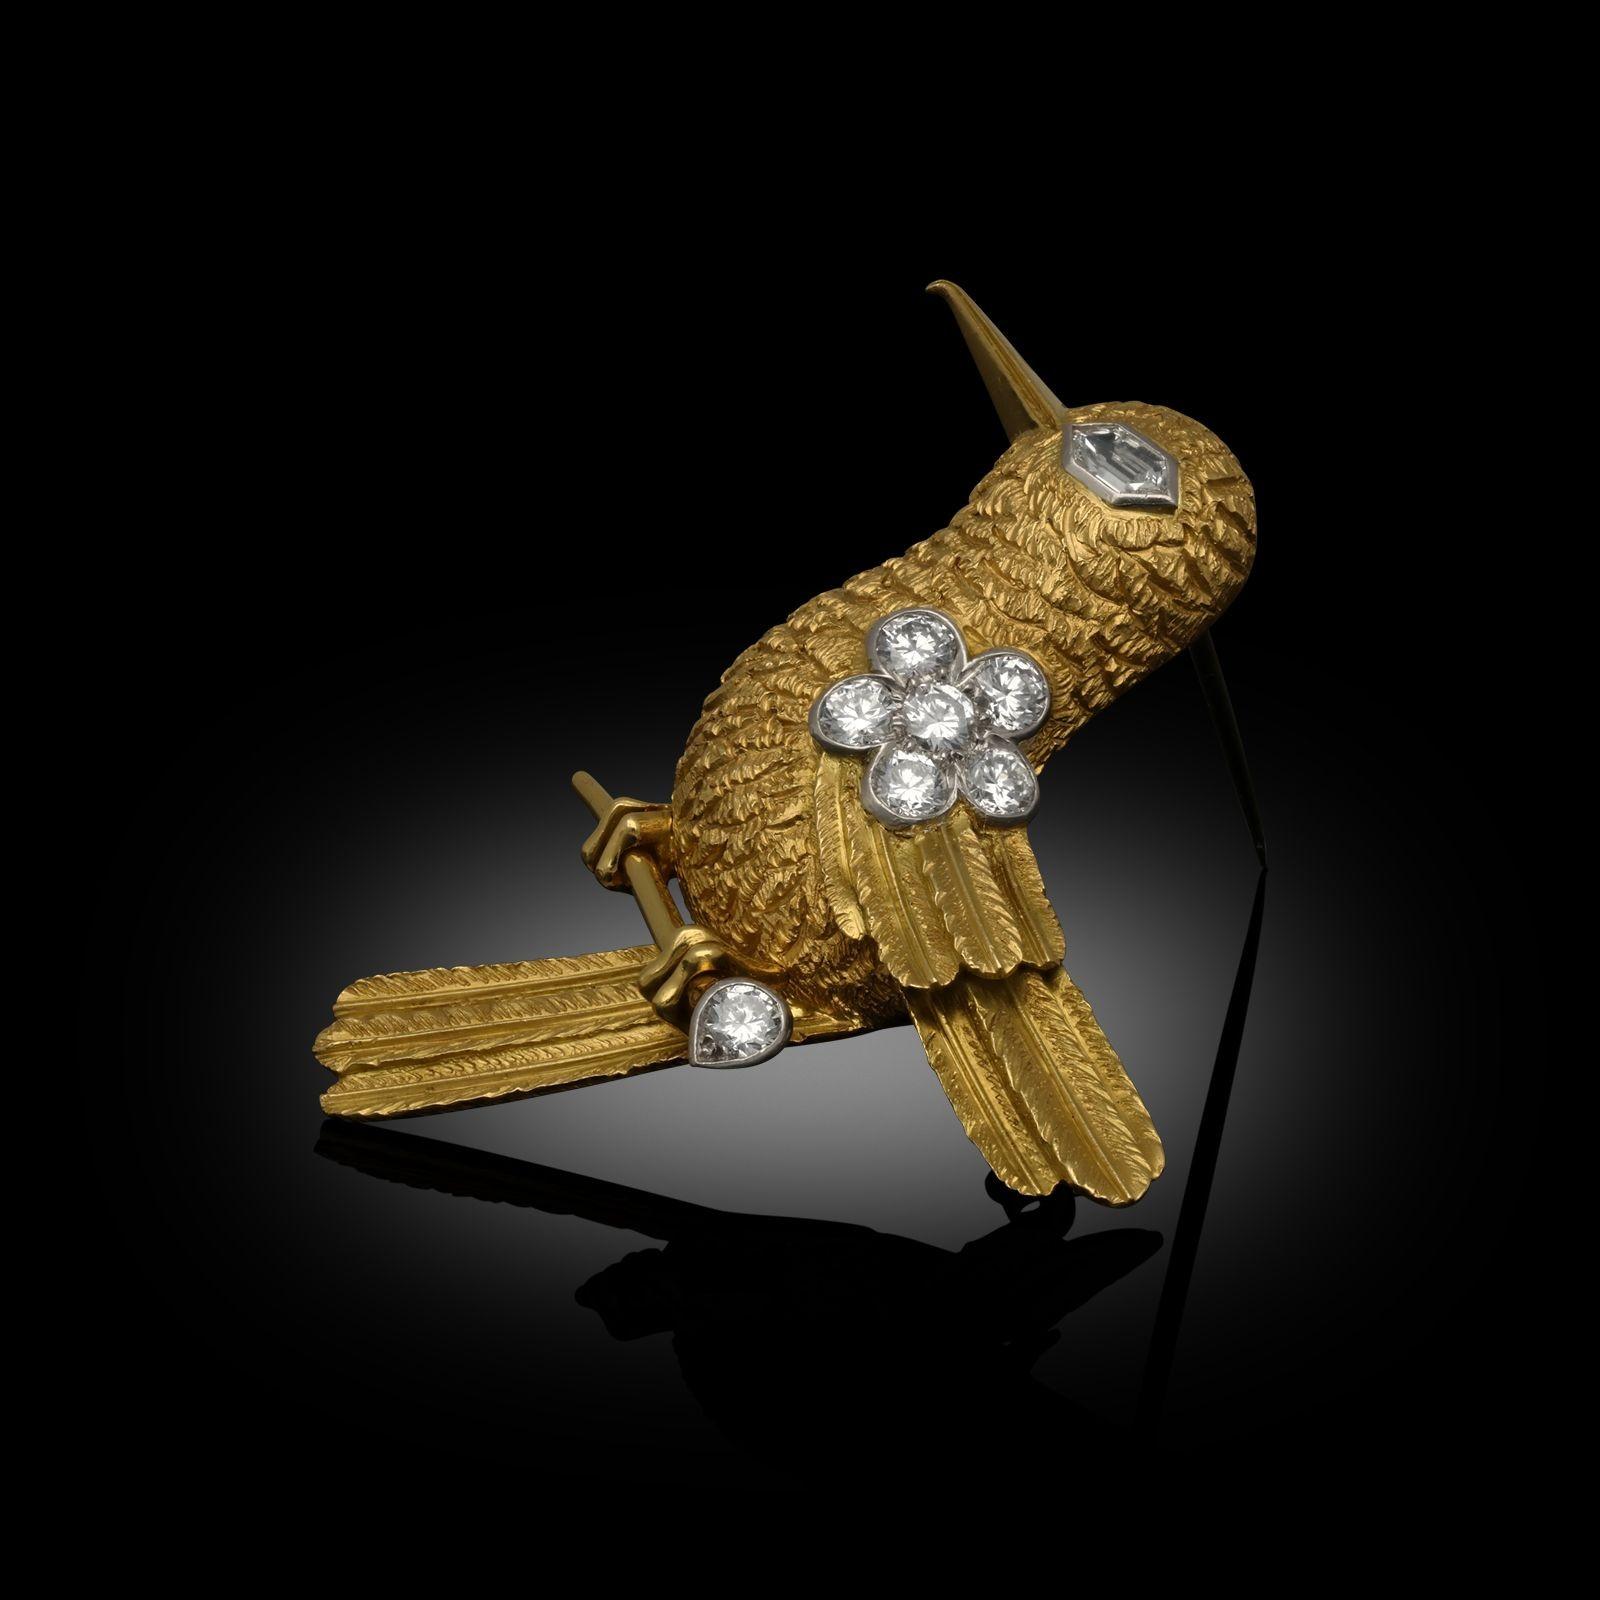 Charmante broche colibri stylisée en or et diamants, réalisée par Cartier vers les années 1960. Le corps est finement modelé en or jaune 18ct avec une finition texturée et des plumes soigneusement formées, le bec et les pattes sont en or poli, l'œil